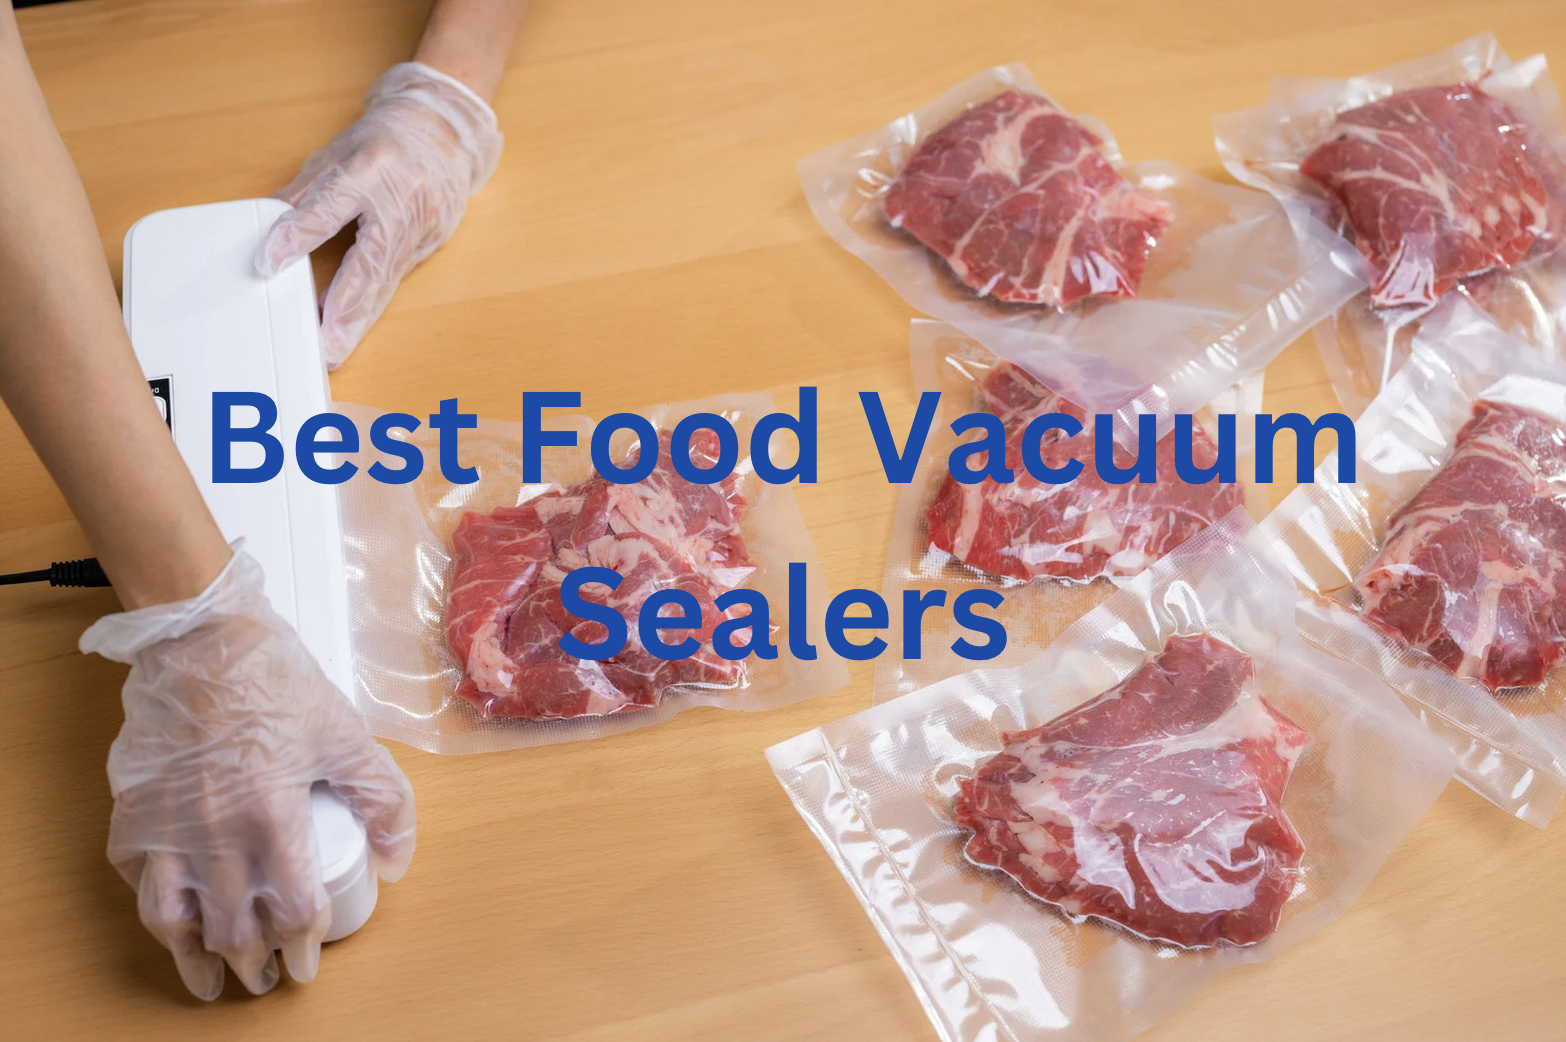 6 Best Food Vacuum Sealers To Keep Food Fresh